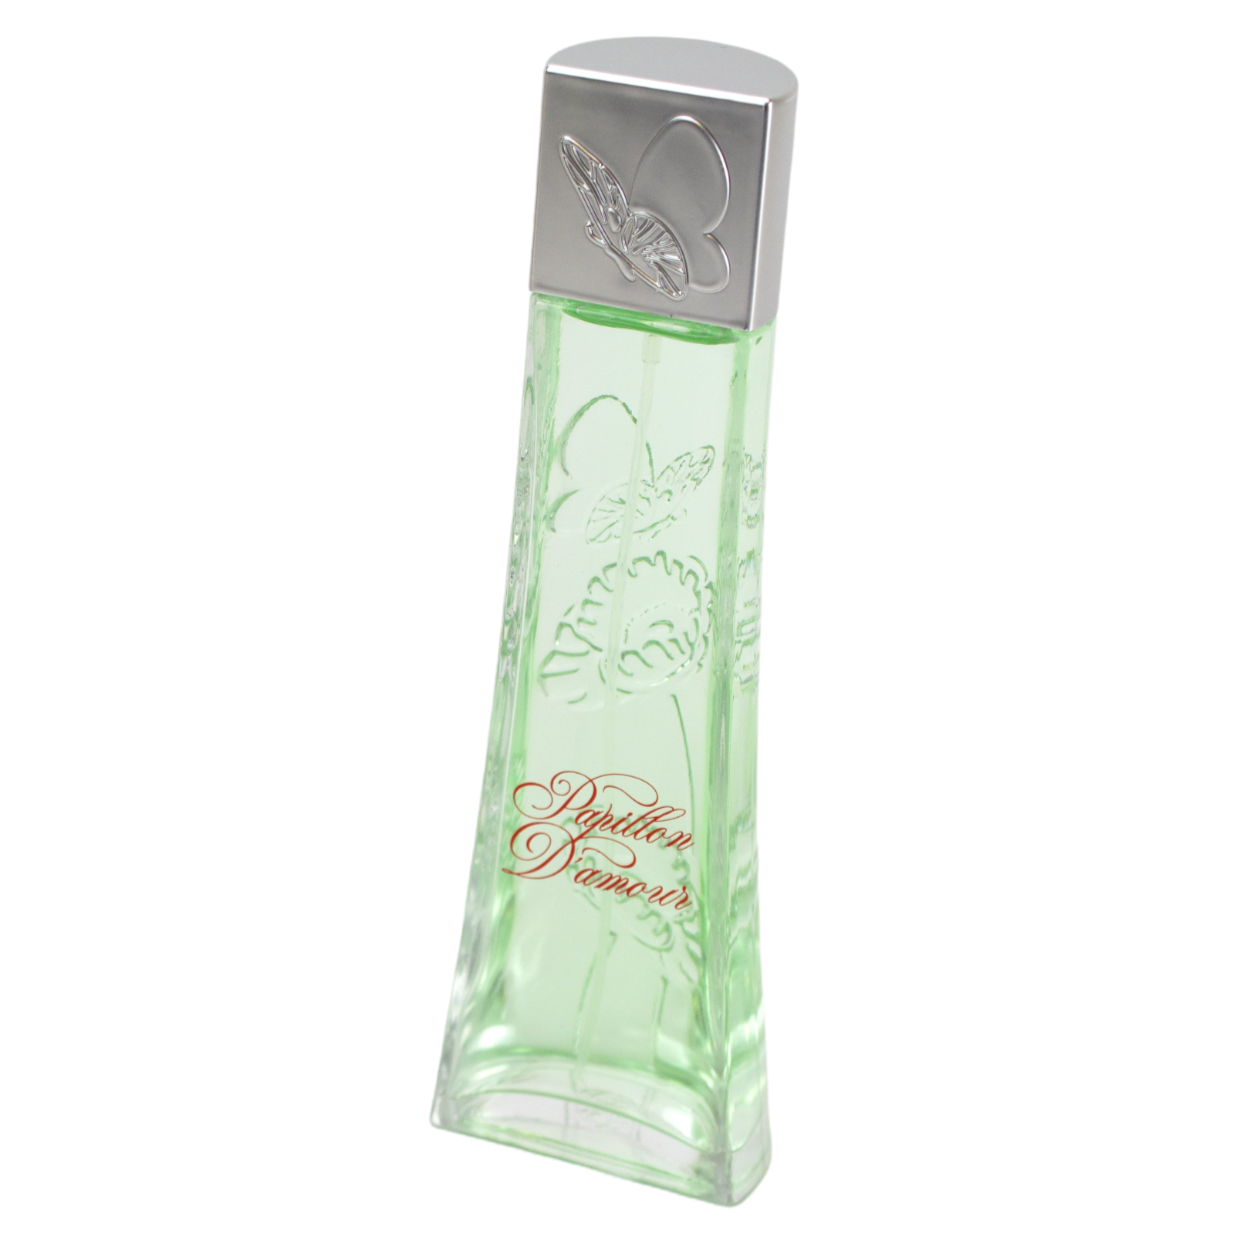 100 ml wody perfumowanej PAPILLON D’AMOUR Orientalny kwiatowy zapach dla kobiet, o wysokiej zawartości olejków zapachowych 10%